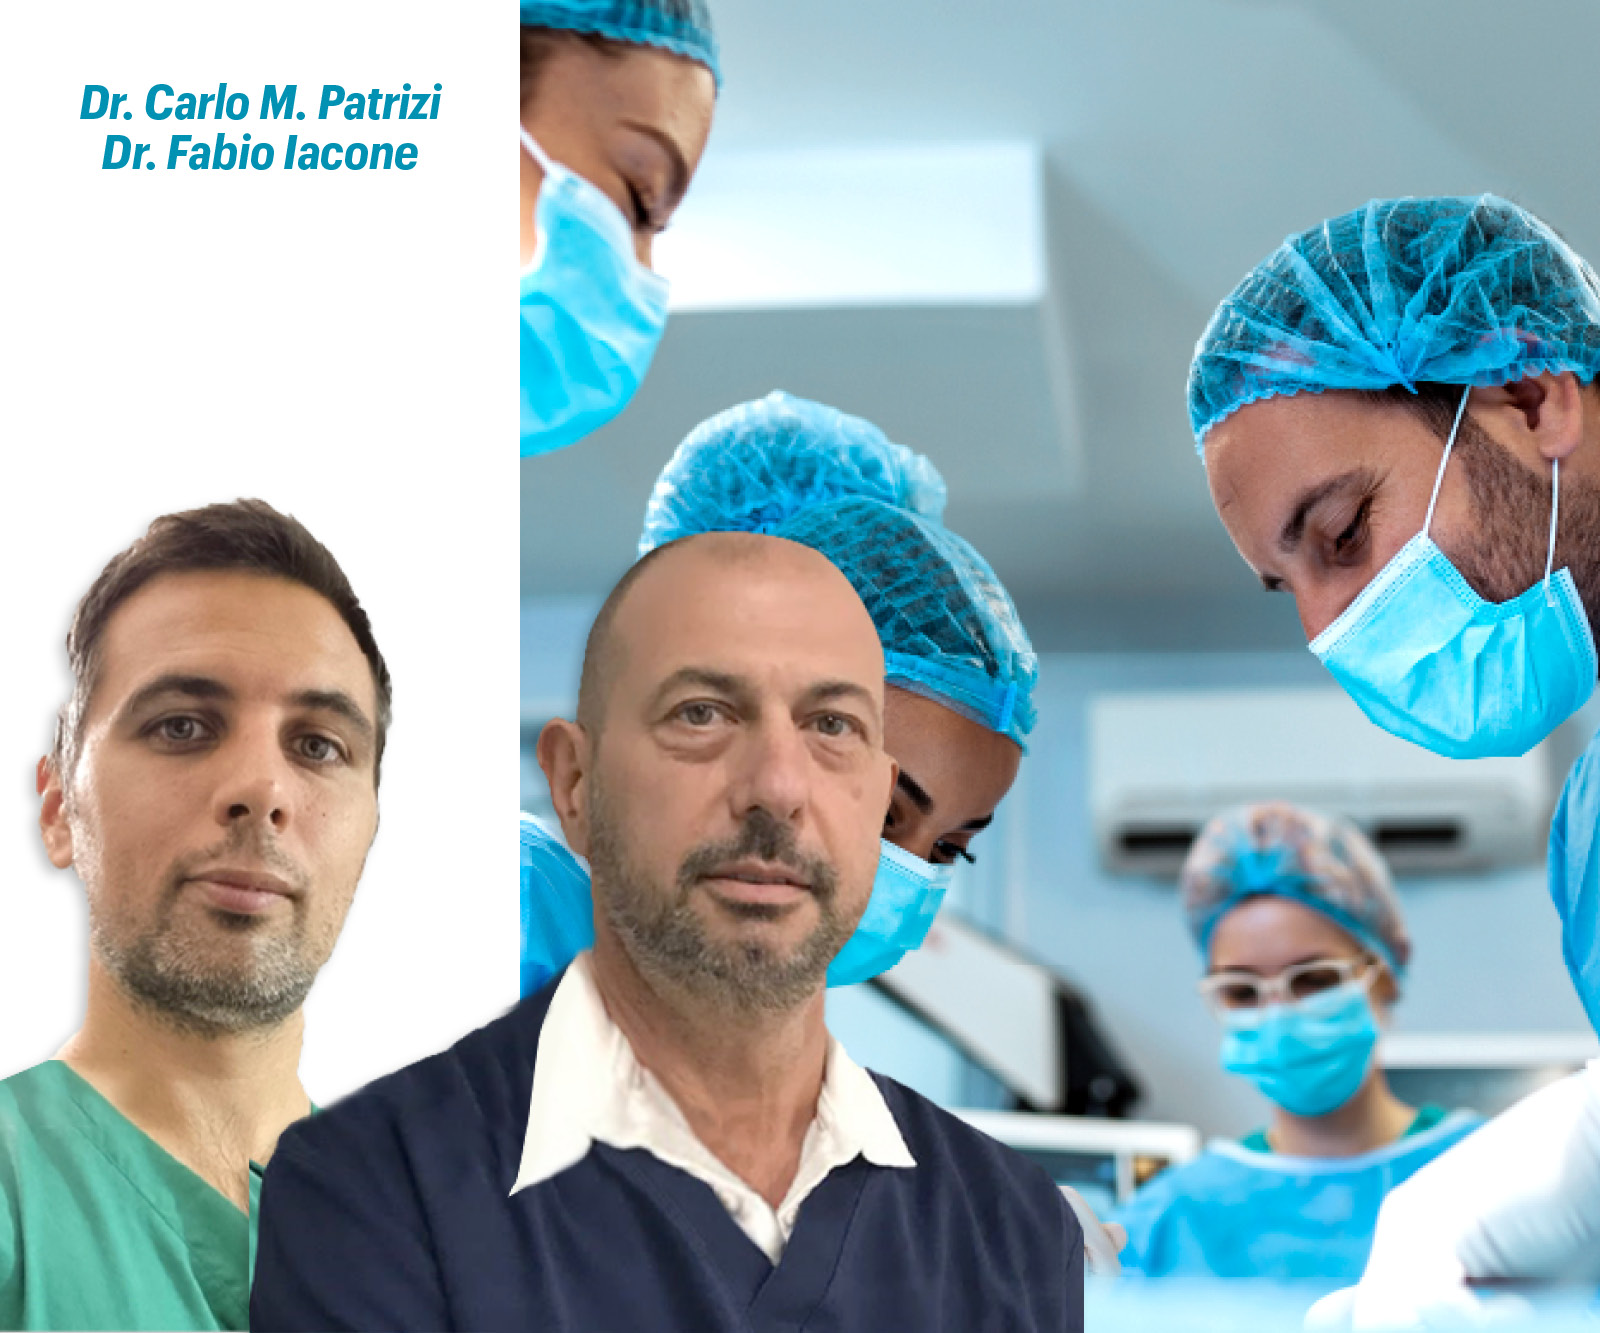 Corso di implantologia base su paziente